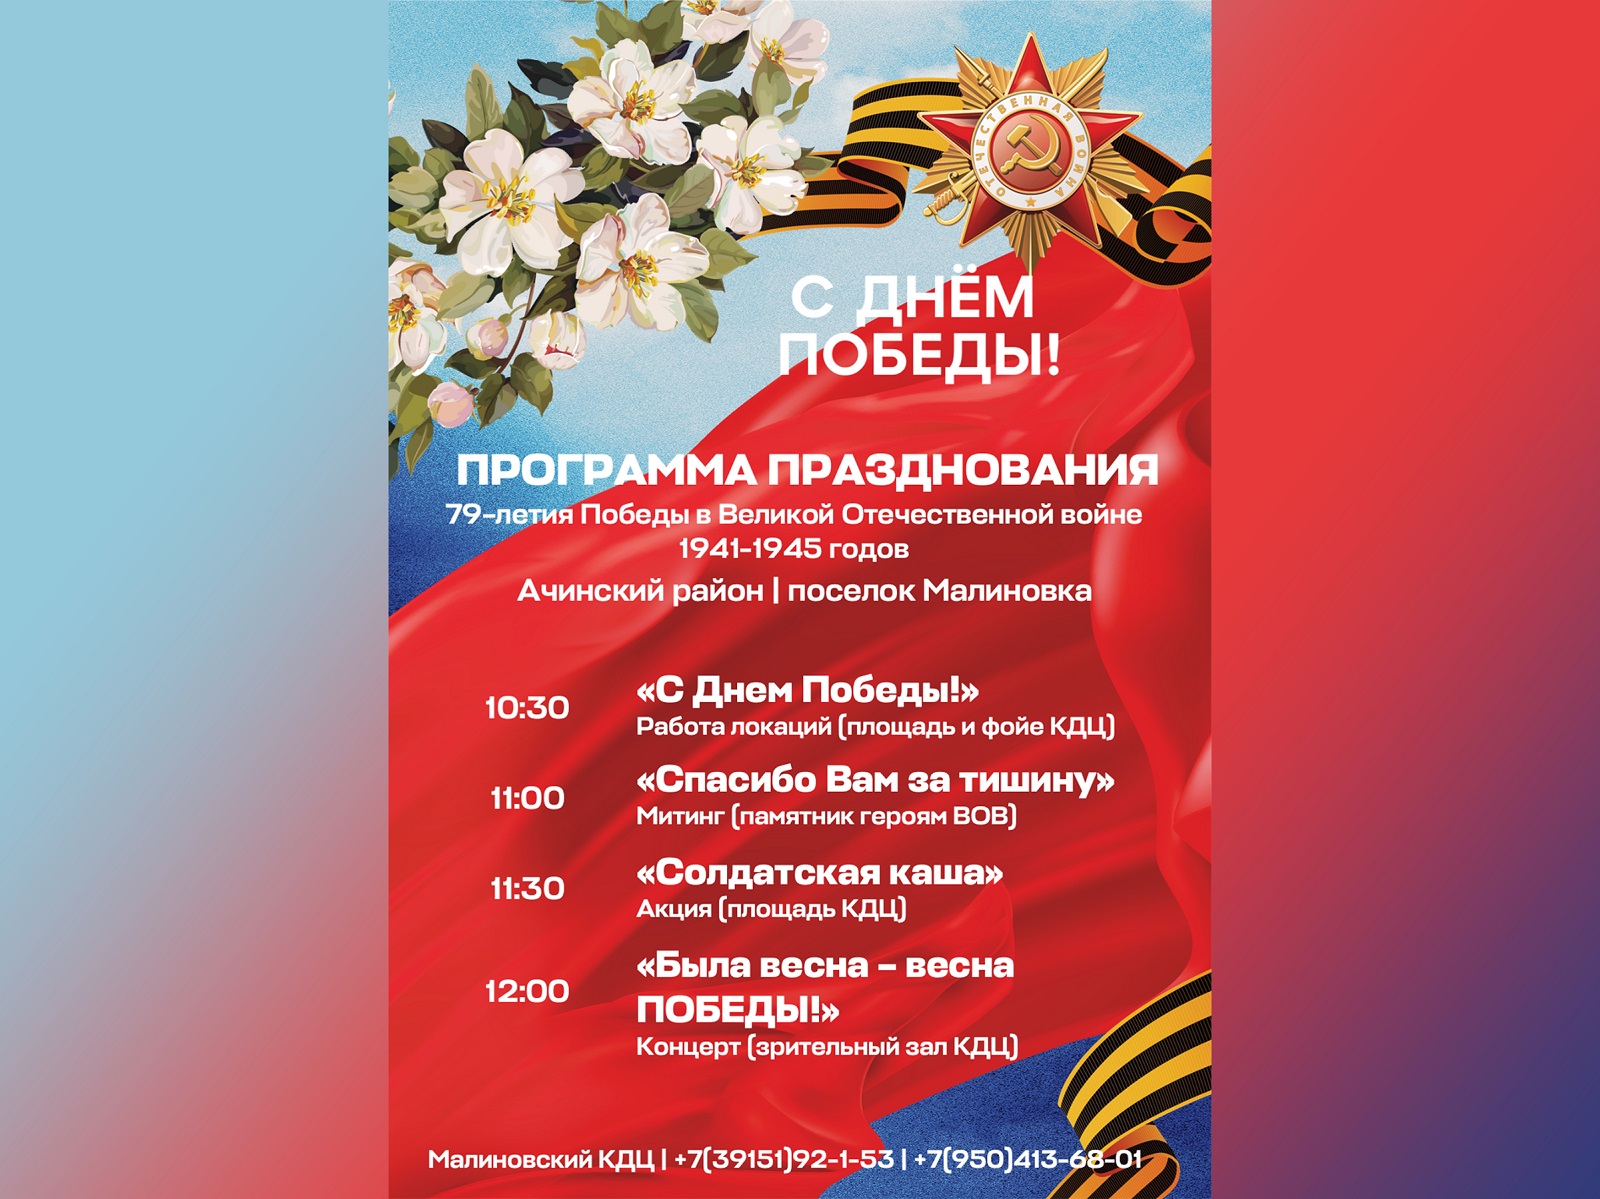 В Ачинском районе готовятся отпраздновать 79-летие Победы в Великой Отечественной войне.